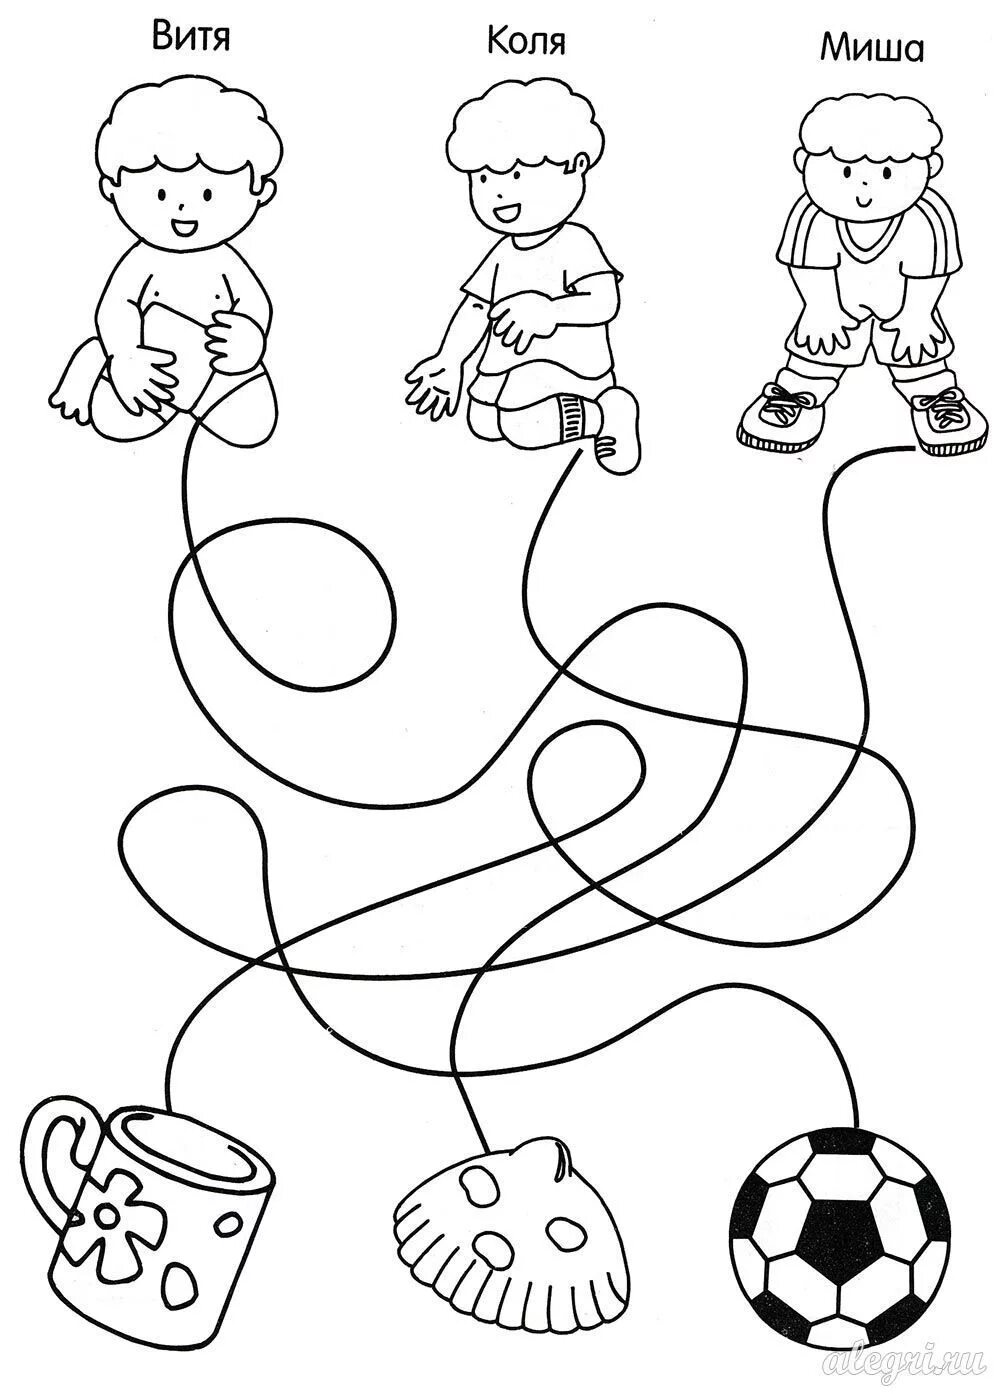 Упражнения детей 3 4. Игрушки задания для дошкольников. Развивающие игровые задания. Легкие задания для малышей. Развивалки для детей дошкольного возраста.